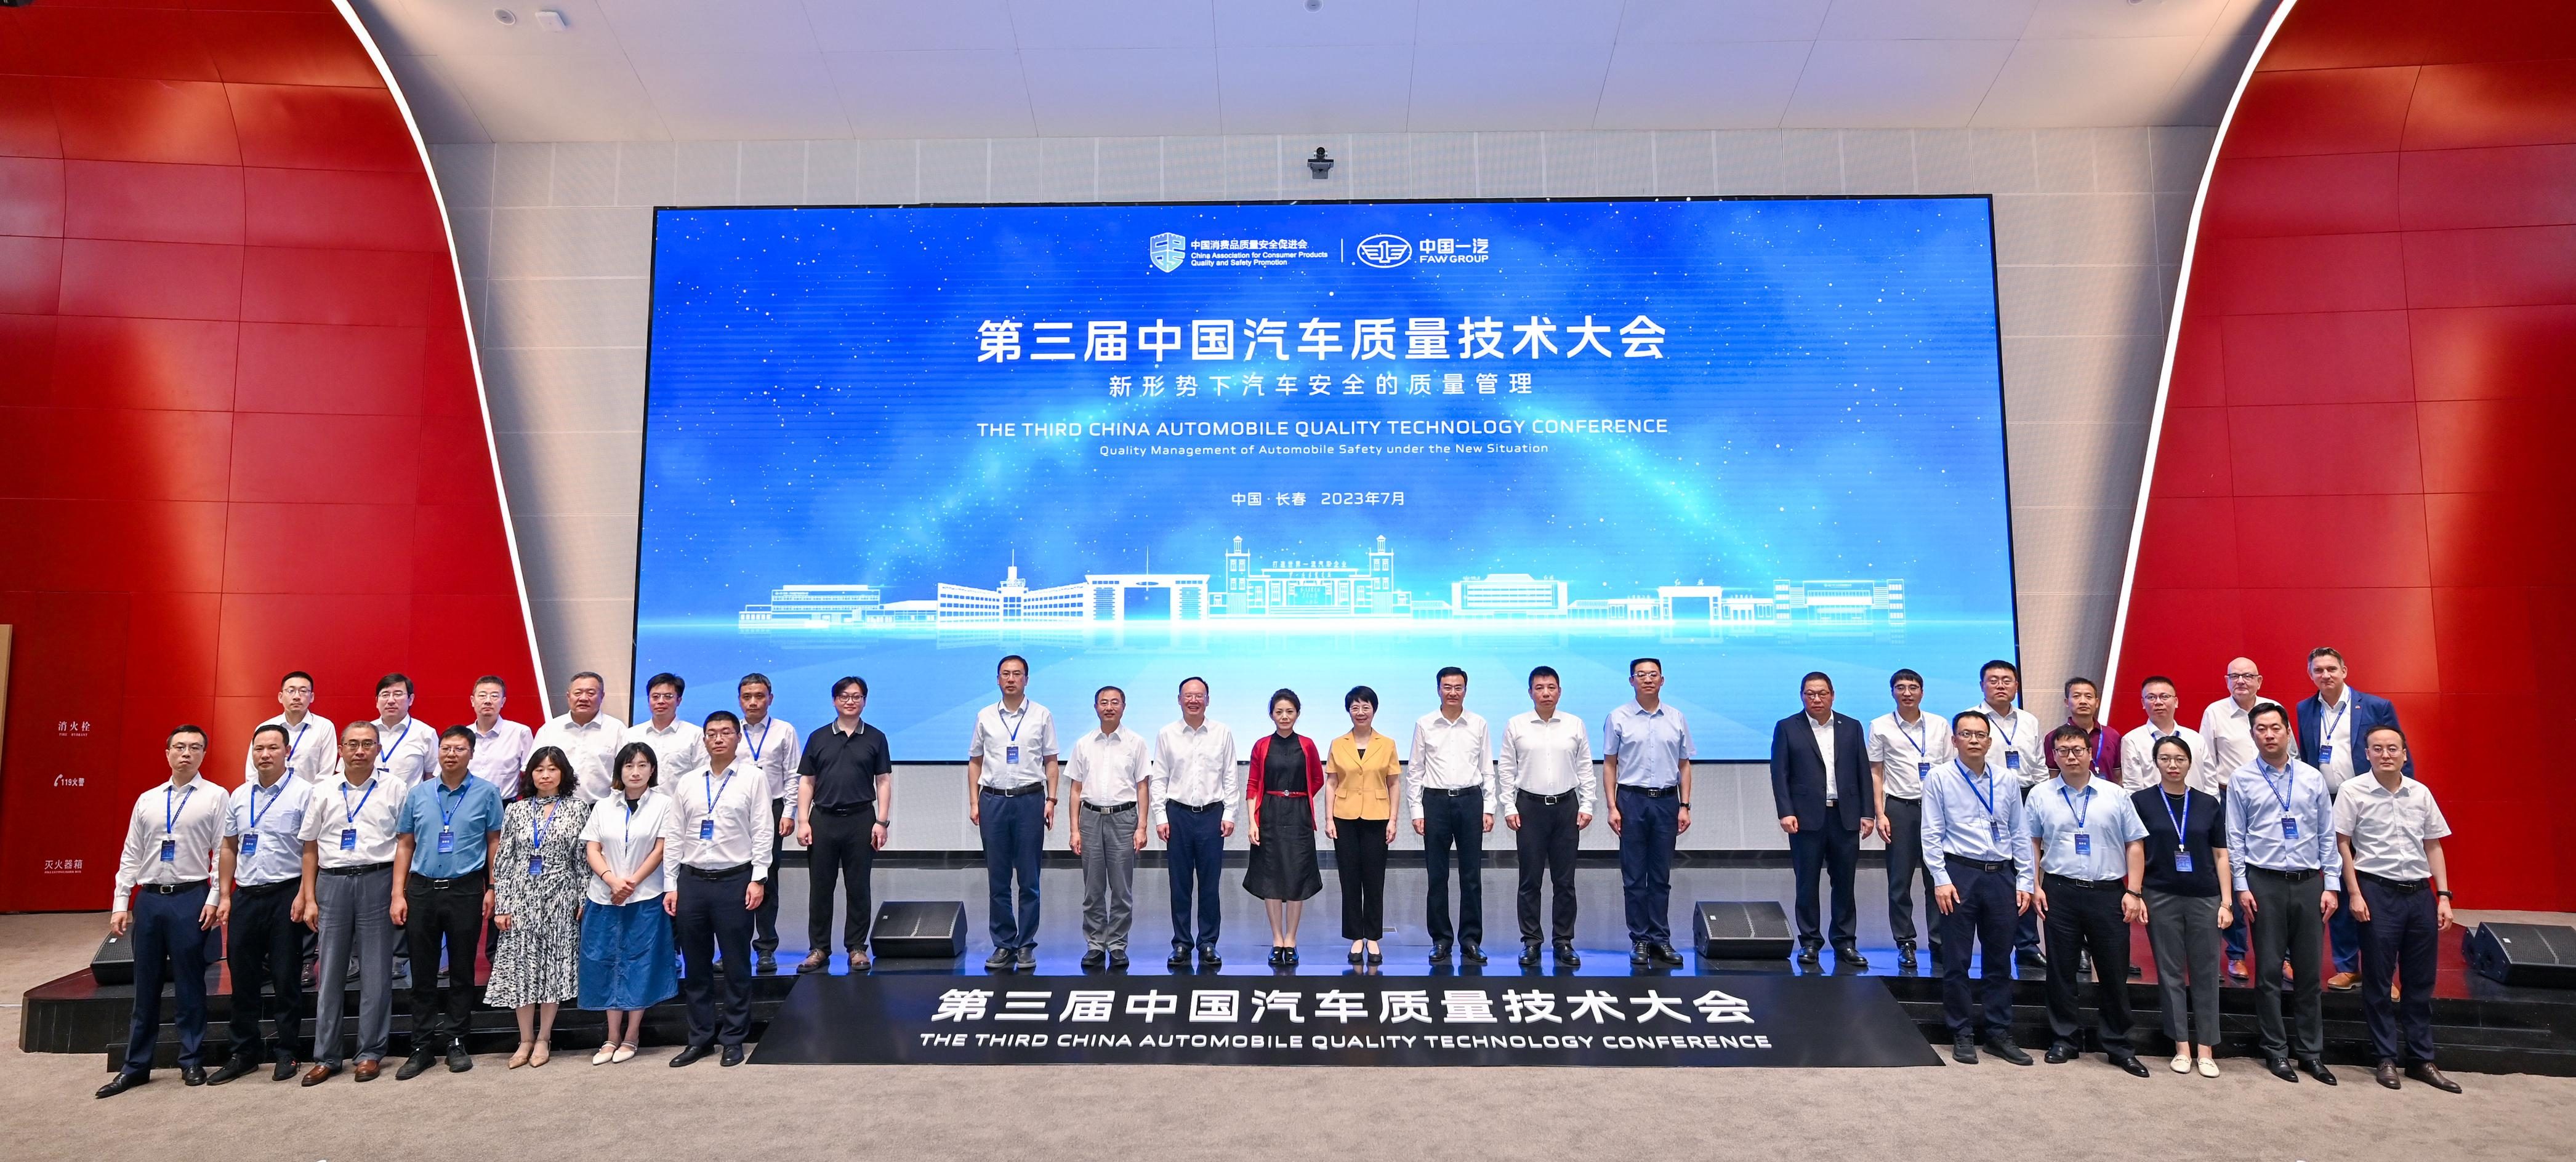 共话汽车质量新形势 第三届中国汽车质量技术大会在中国一汽召开